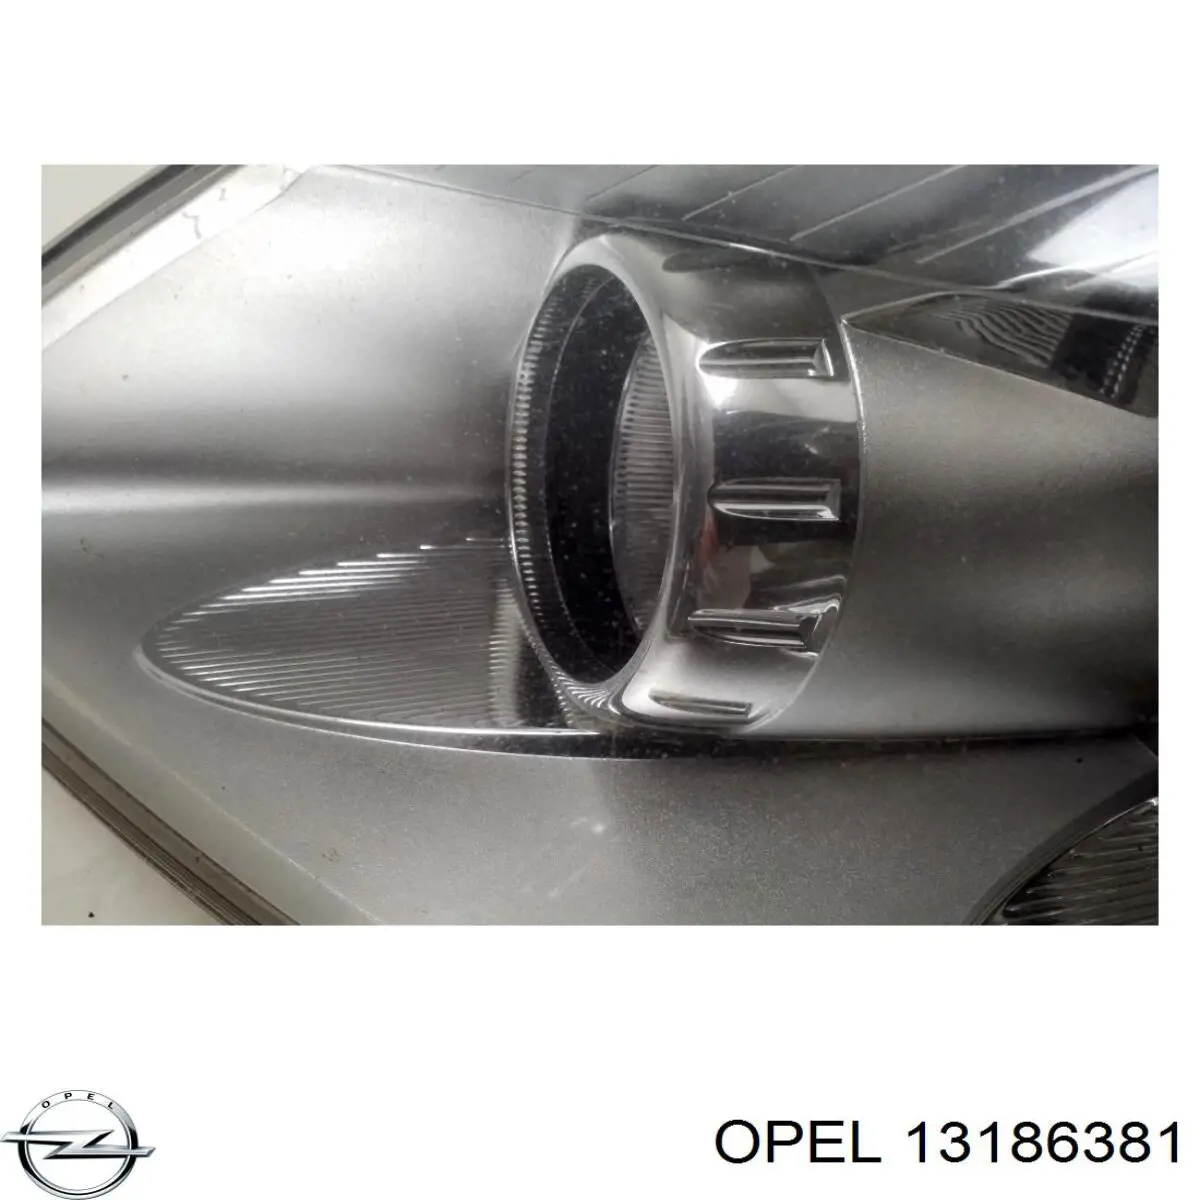 13186381 Opel faro izquierdo